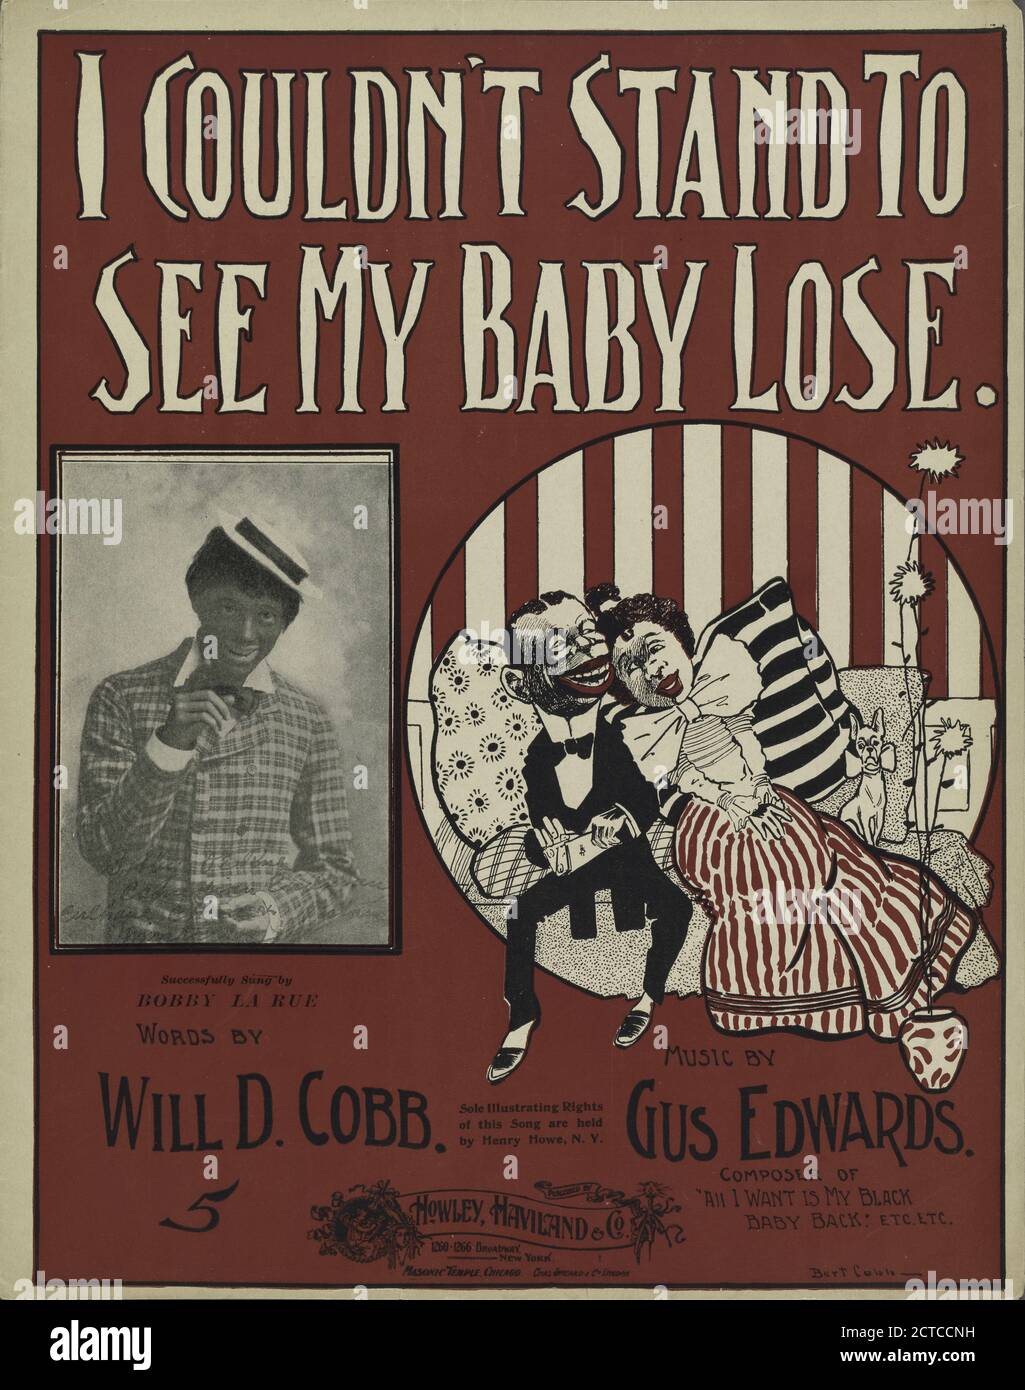 Ich konnte es nicht ertragen, mein Baby zu verlieren, notierte Musik, Partituren, 1899, Cobb, will D. (1876-1930), Edwards, Gus (1879-1945 Stockfoto